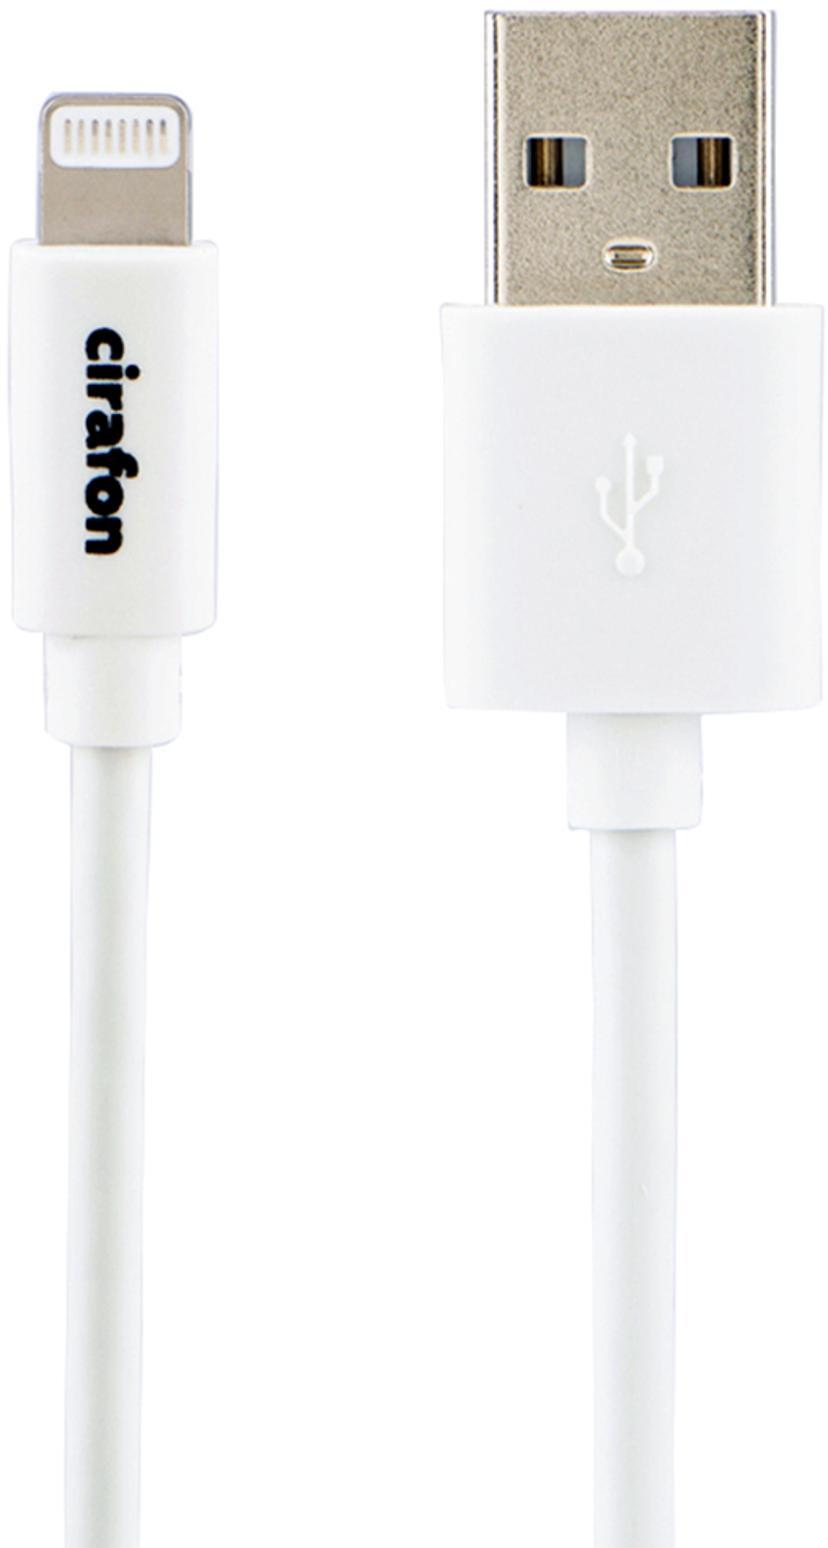 Cirafon Cirafon AM To Lightning Cable 0.15m - White - New Mfi